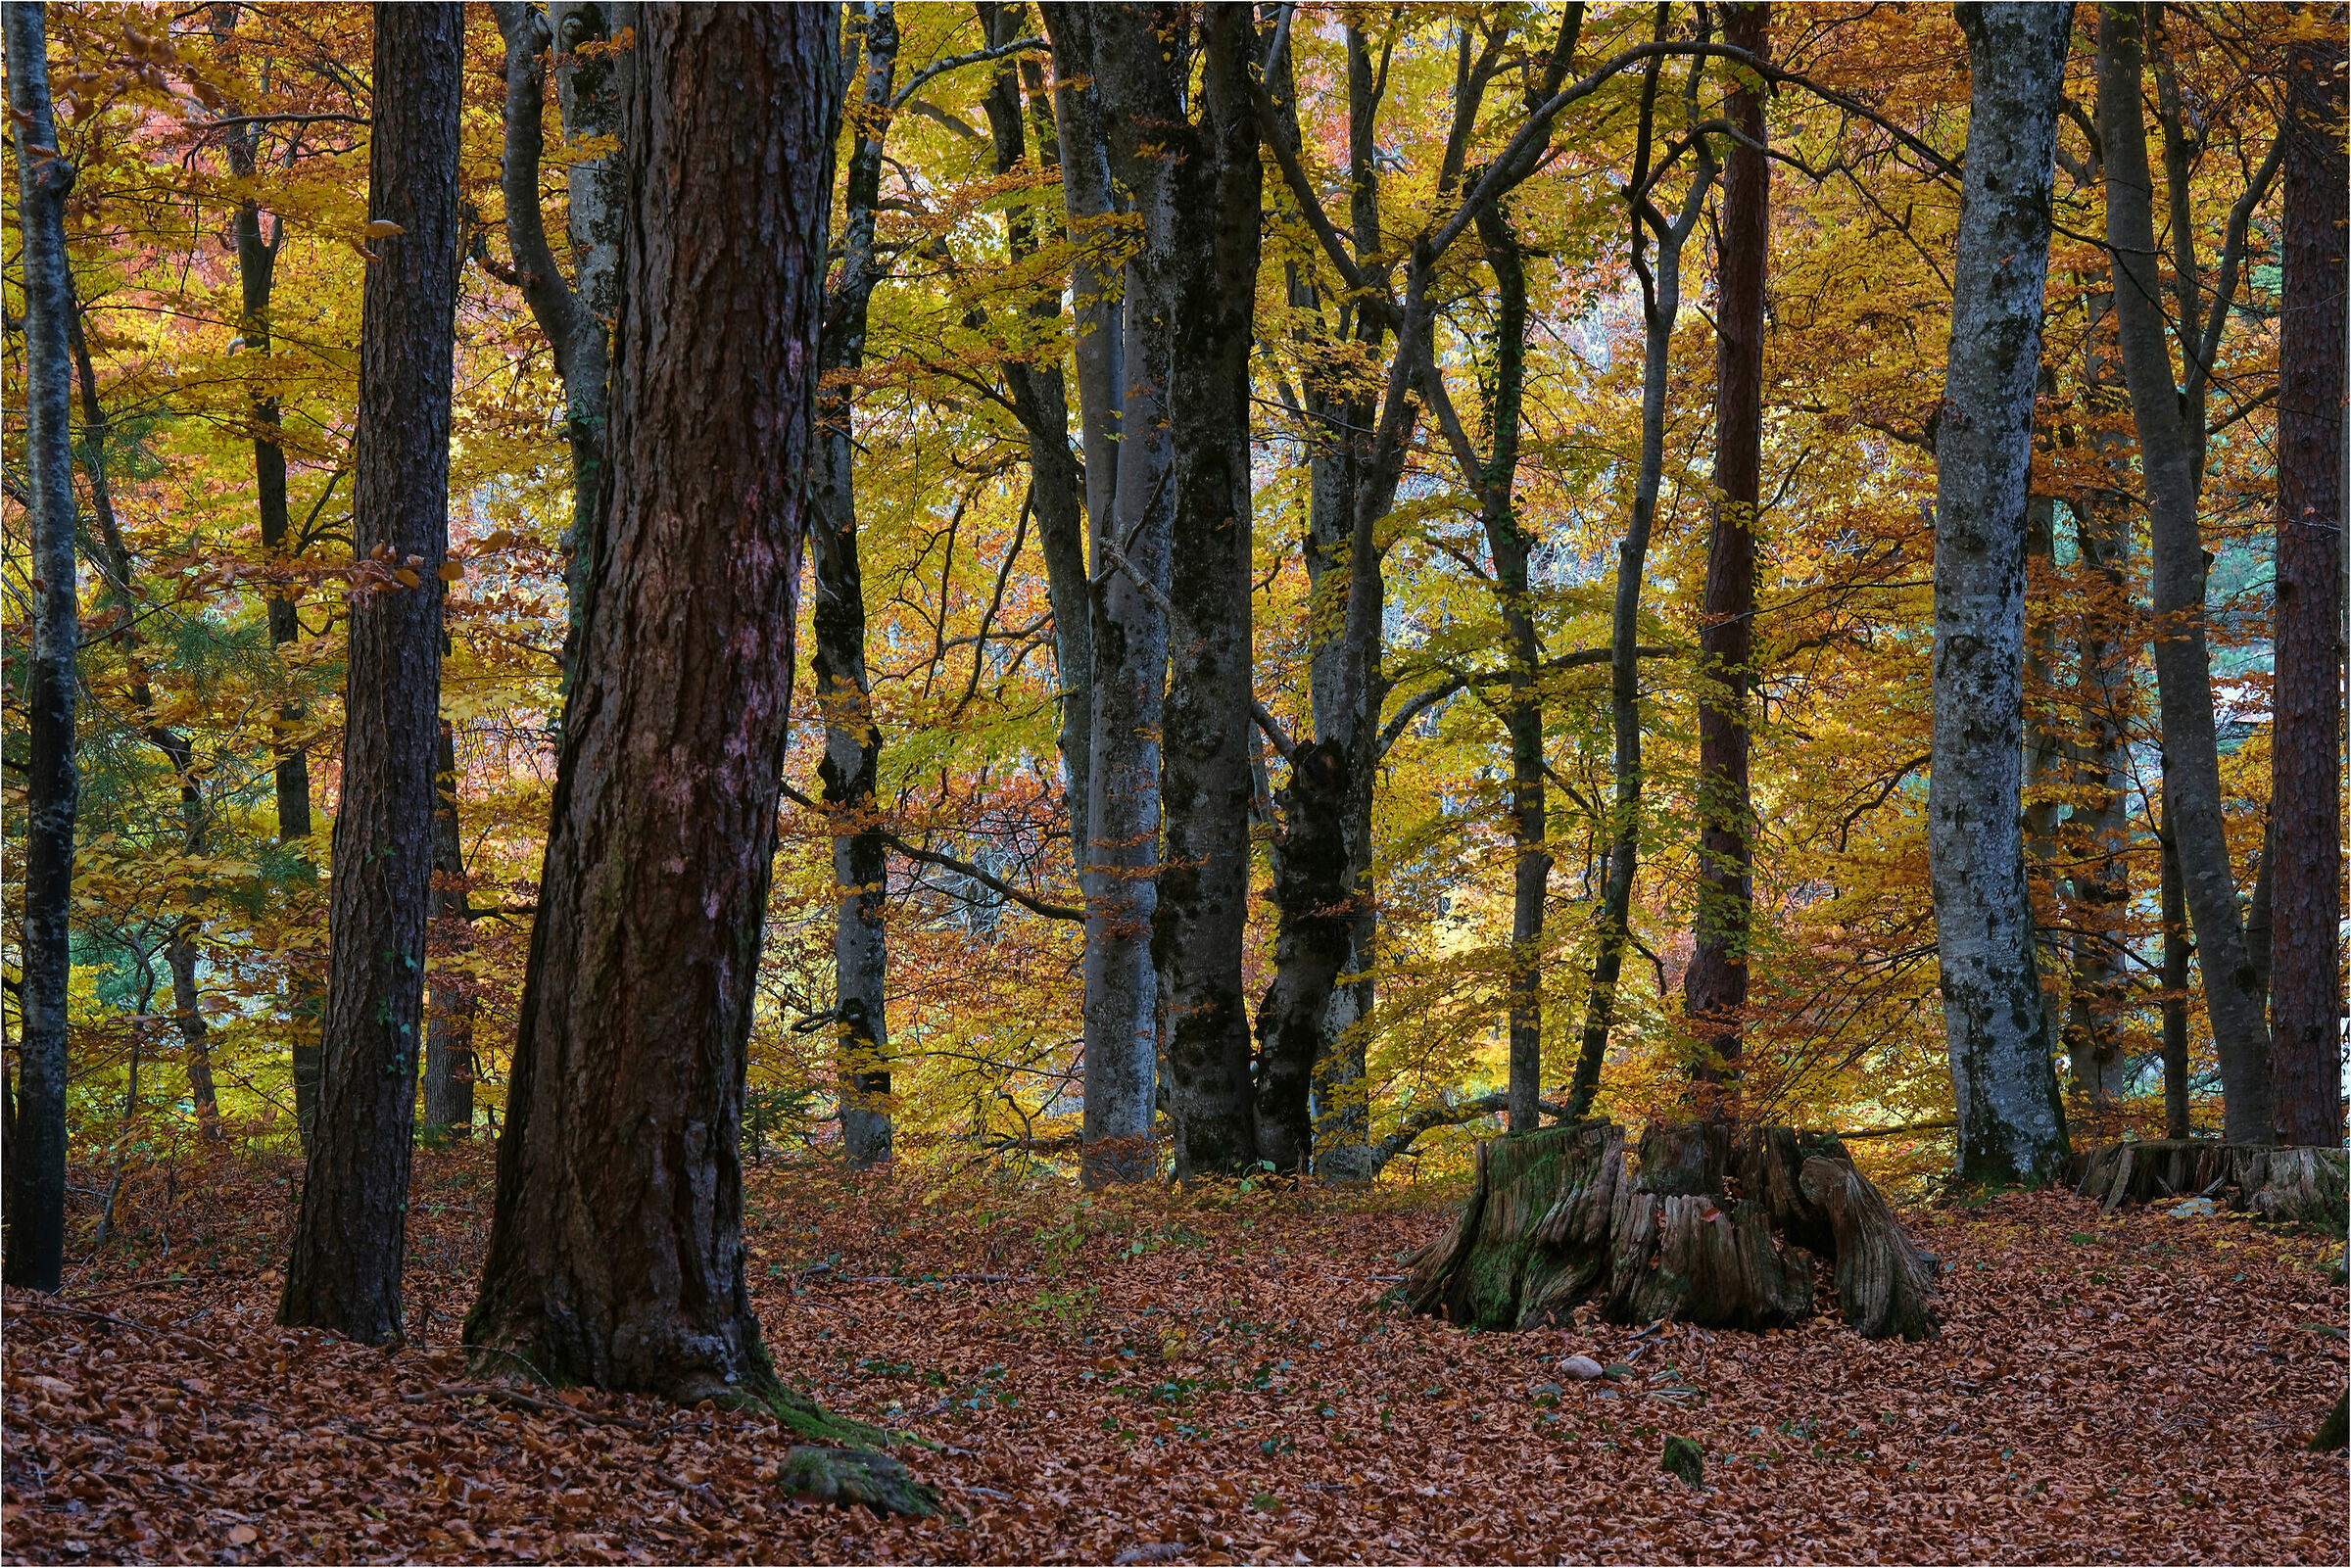 Dead tree trunk in Autumn...